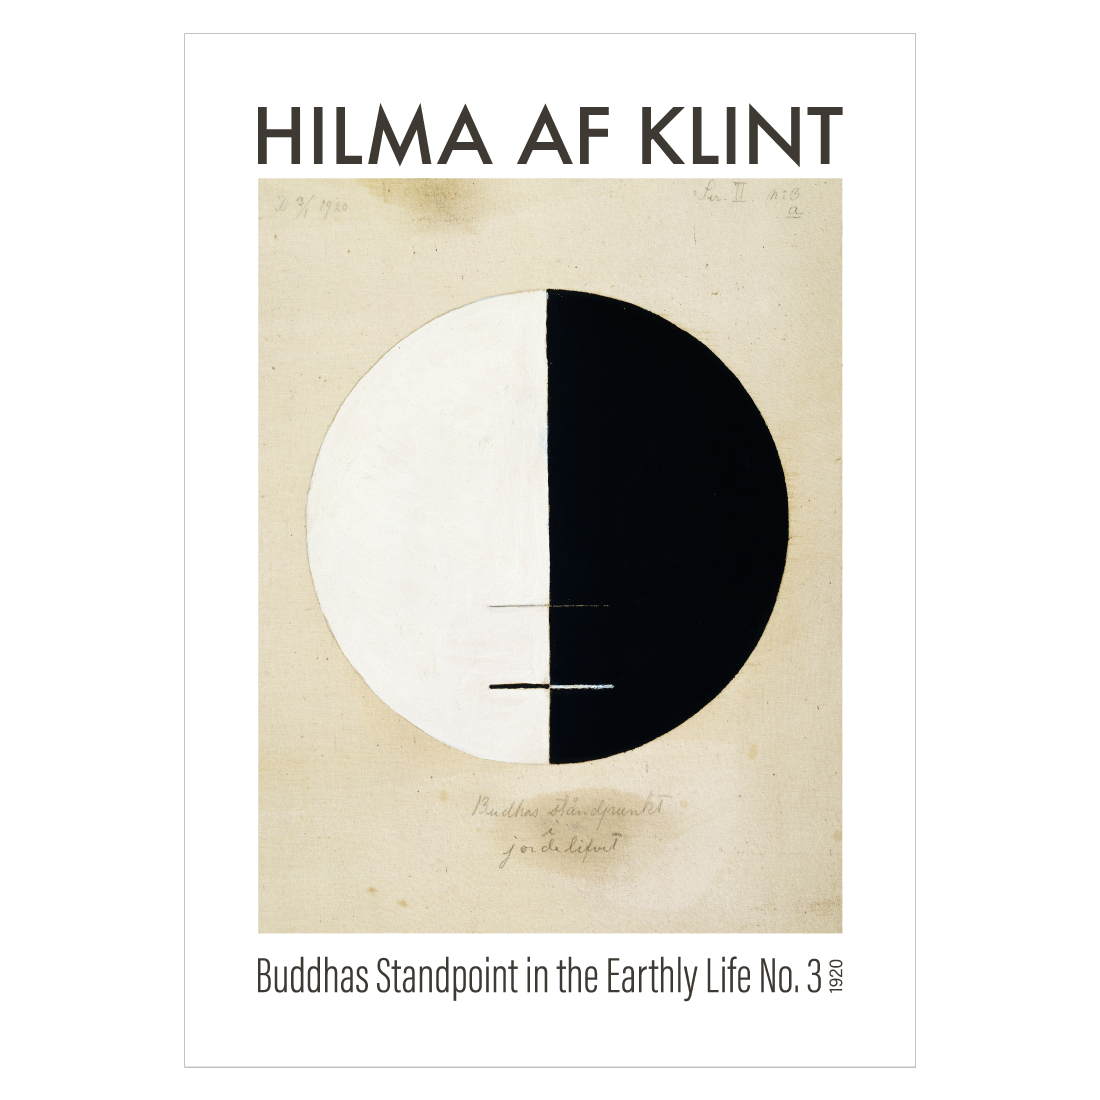 kunstplakat med Hilma af Klint's "Buddhas Standpoint no. 3"